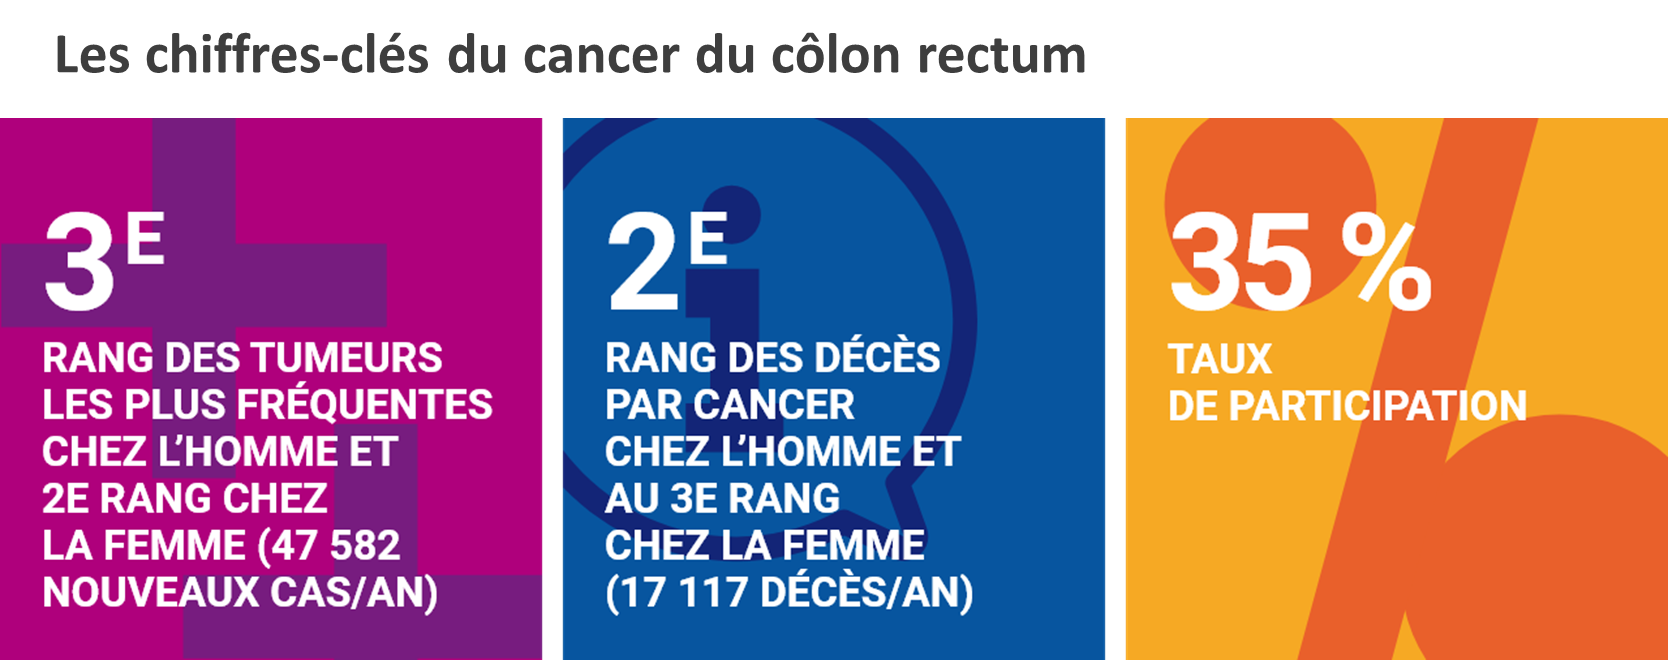 Les chiffres clés du cancer du colon rectum (sources SpF)